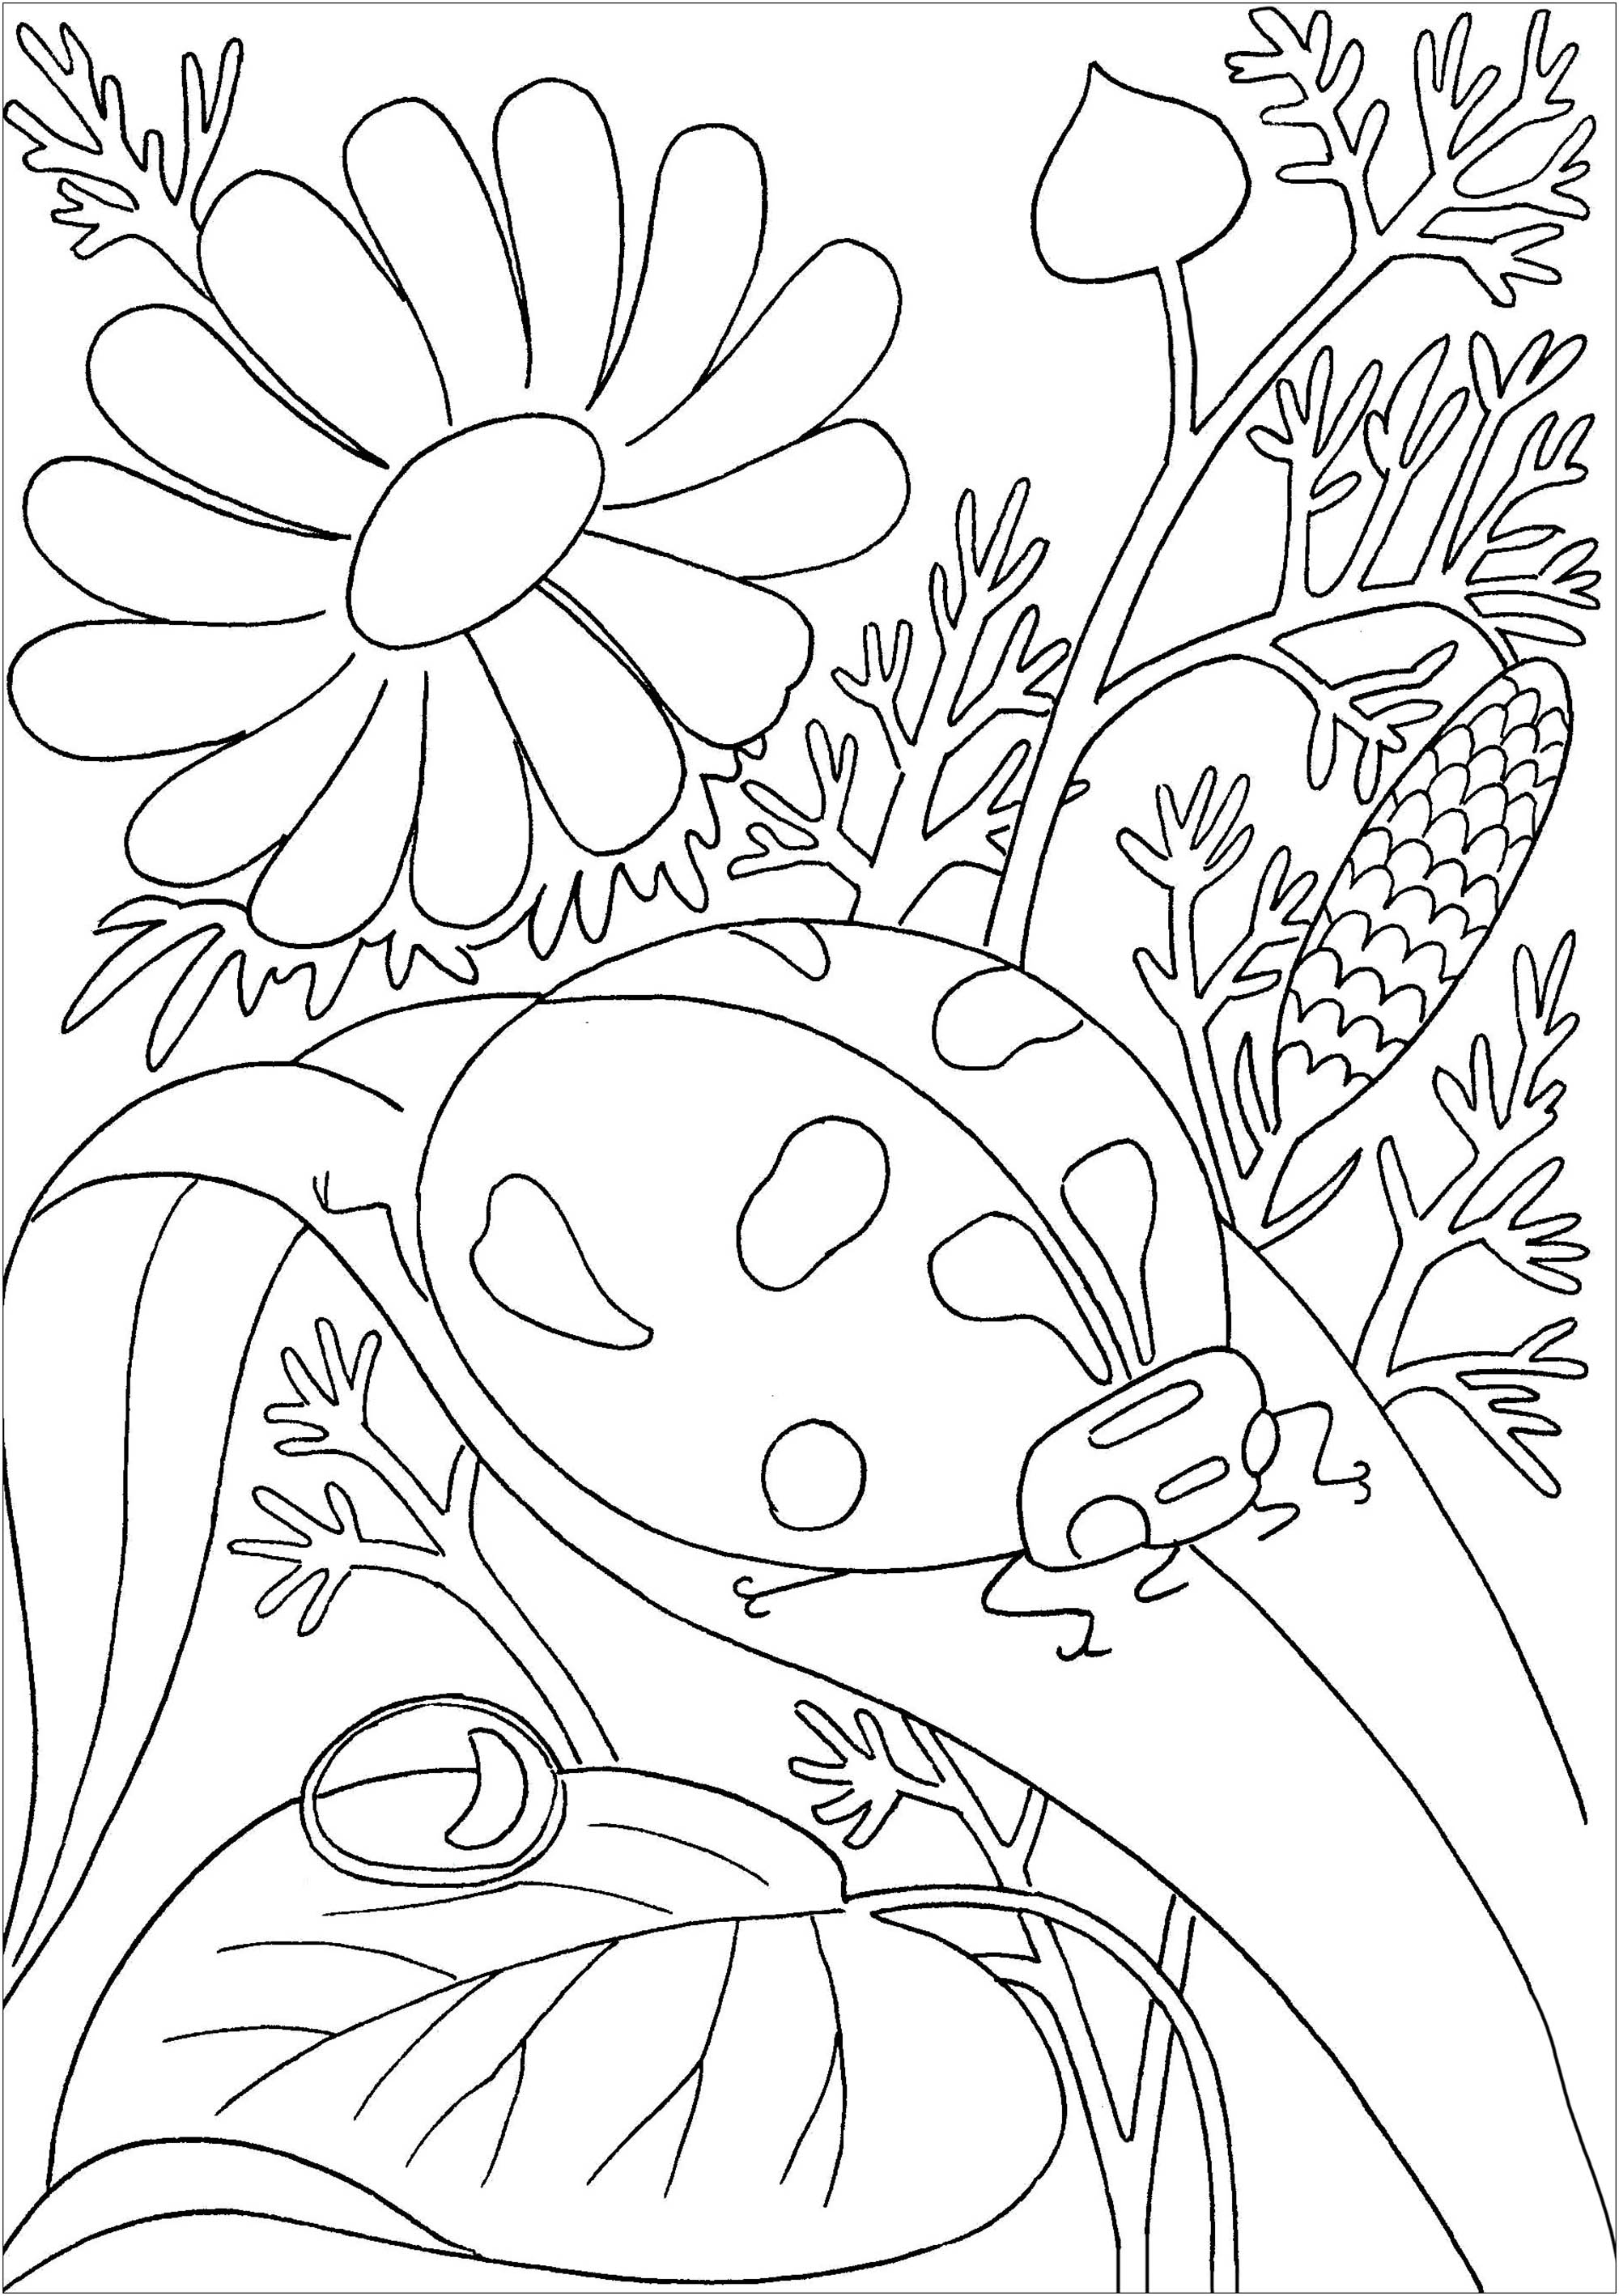 Joaninha gira numa folha, com flores no fundo